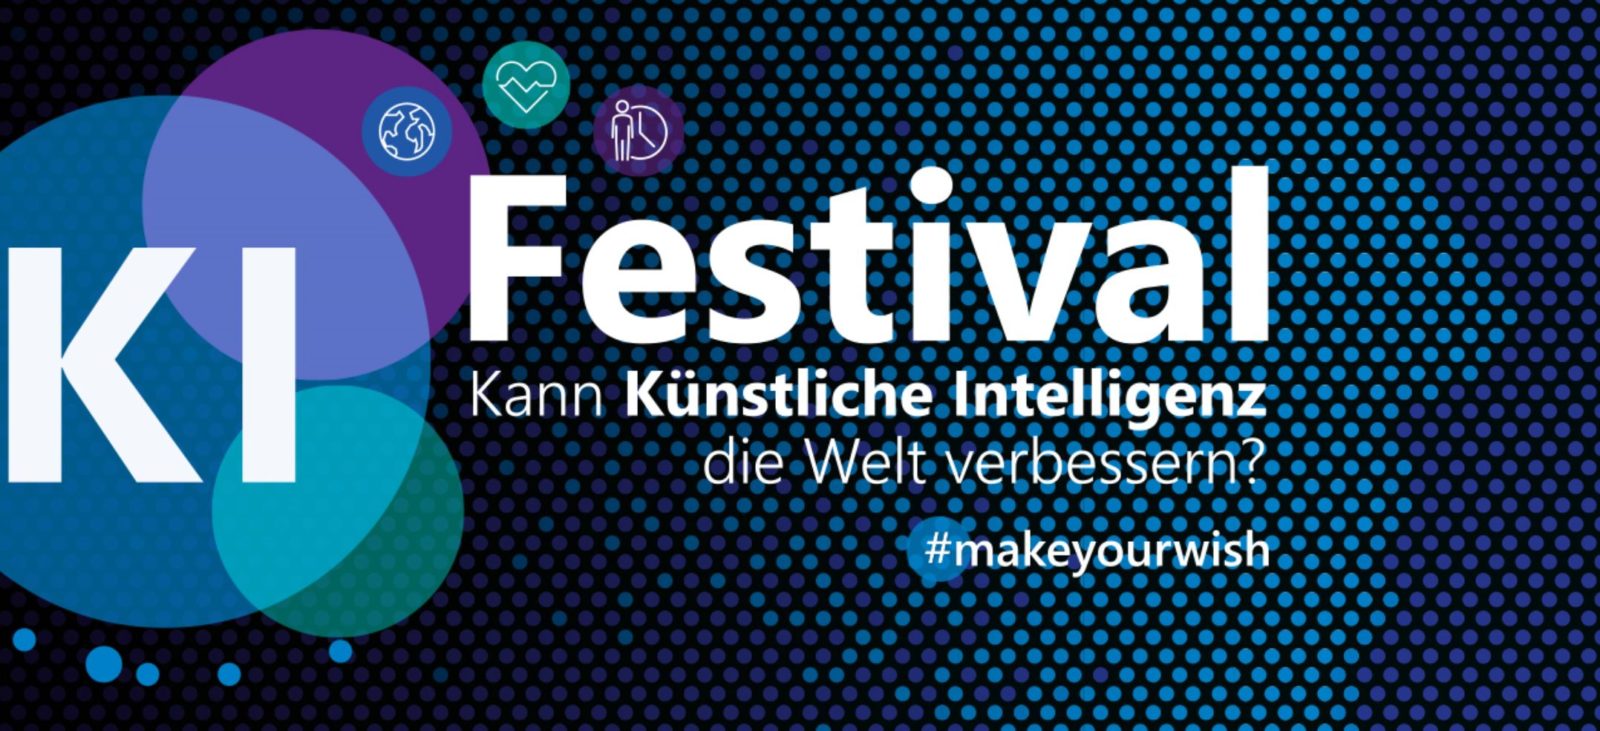 KI Festival - Kann Künstliche Intelligenz die Welt verbessern - Make Your Wish